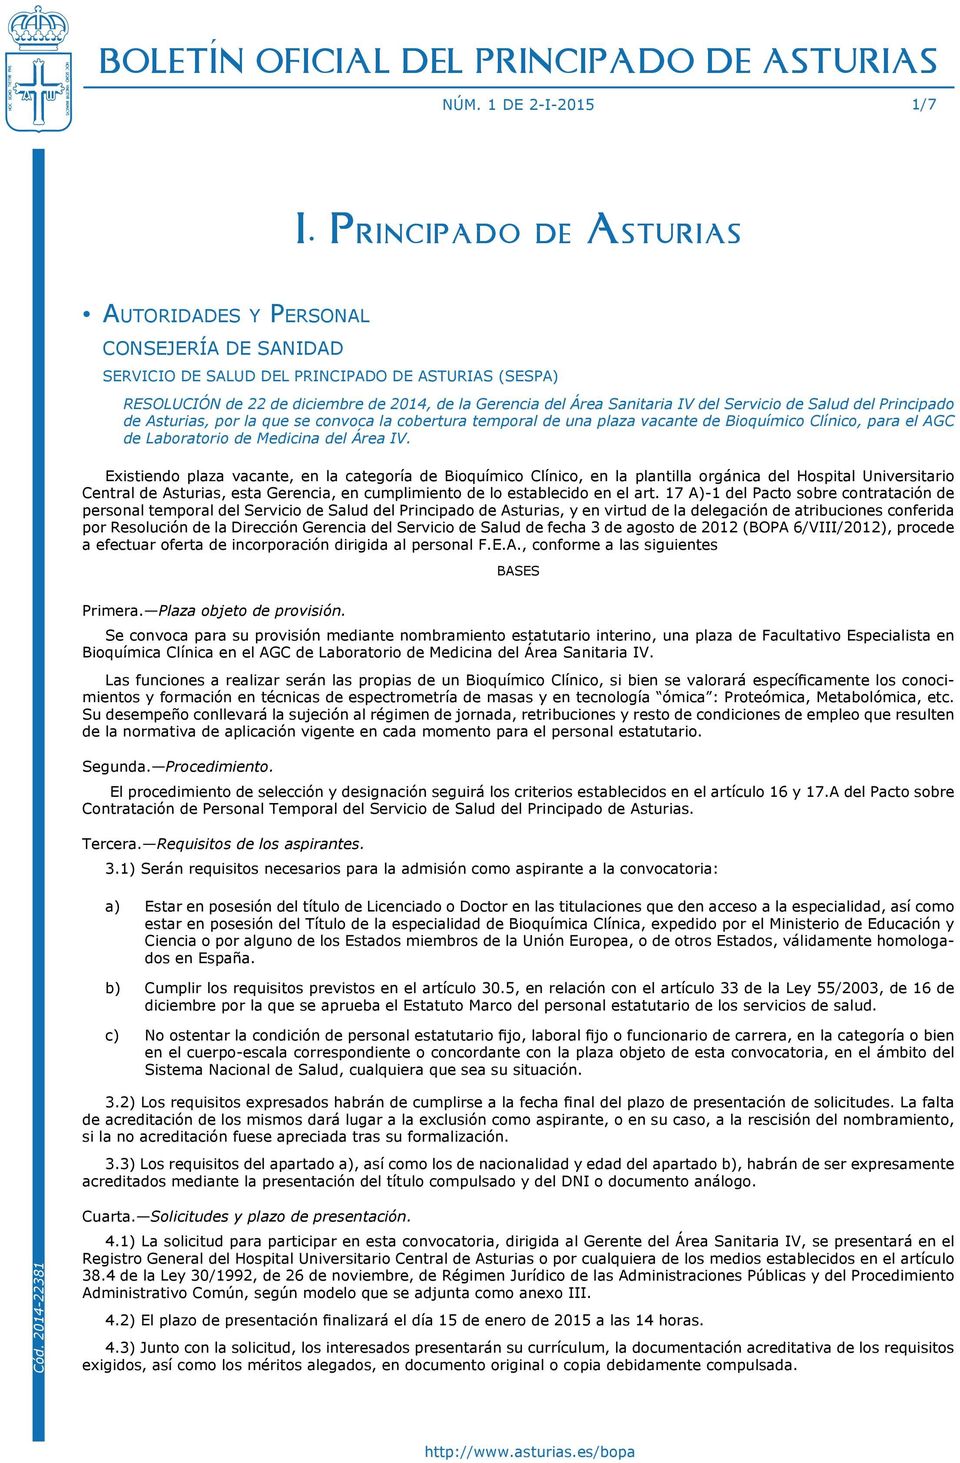 Sanitaria IV del Servicio de Salud del Principado de Asturias, por la que se convoca la cobertura temporal de una plaza vacante de Bioquímico Clínico, para el AGC de Laboratorio de Medicina del Área